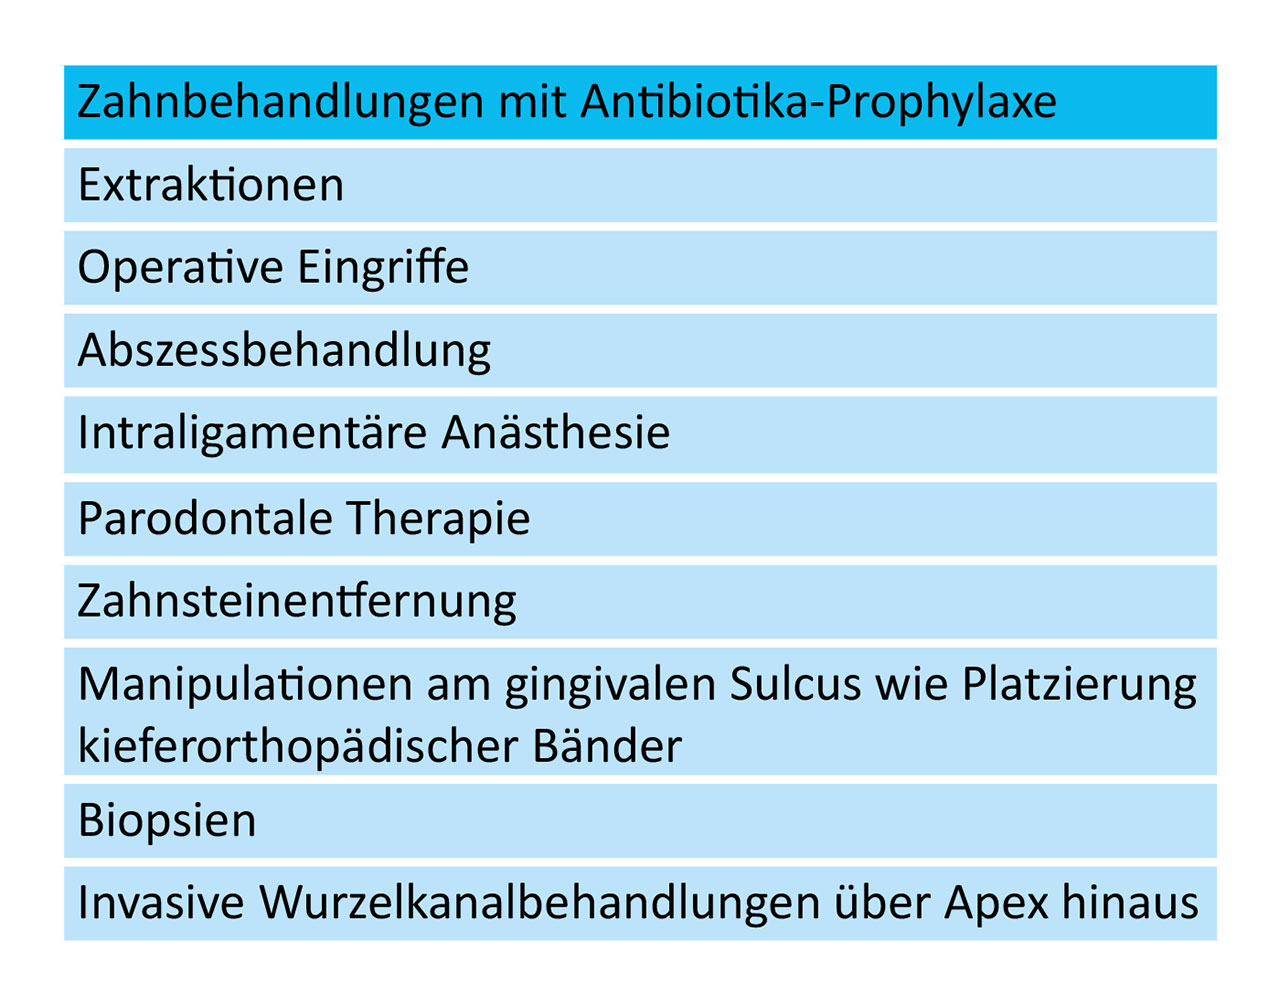 Tab. 3 Zahnbehandlungen mit Antibiotika-Prophylaxe [6]